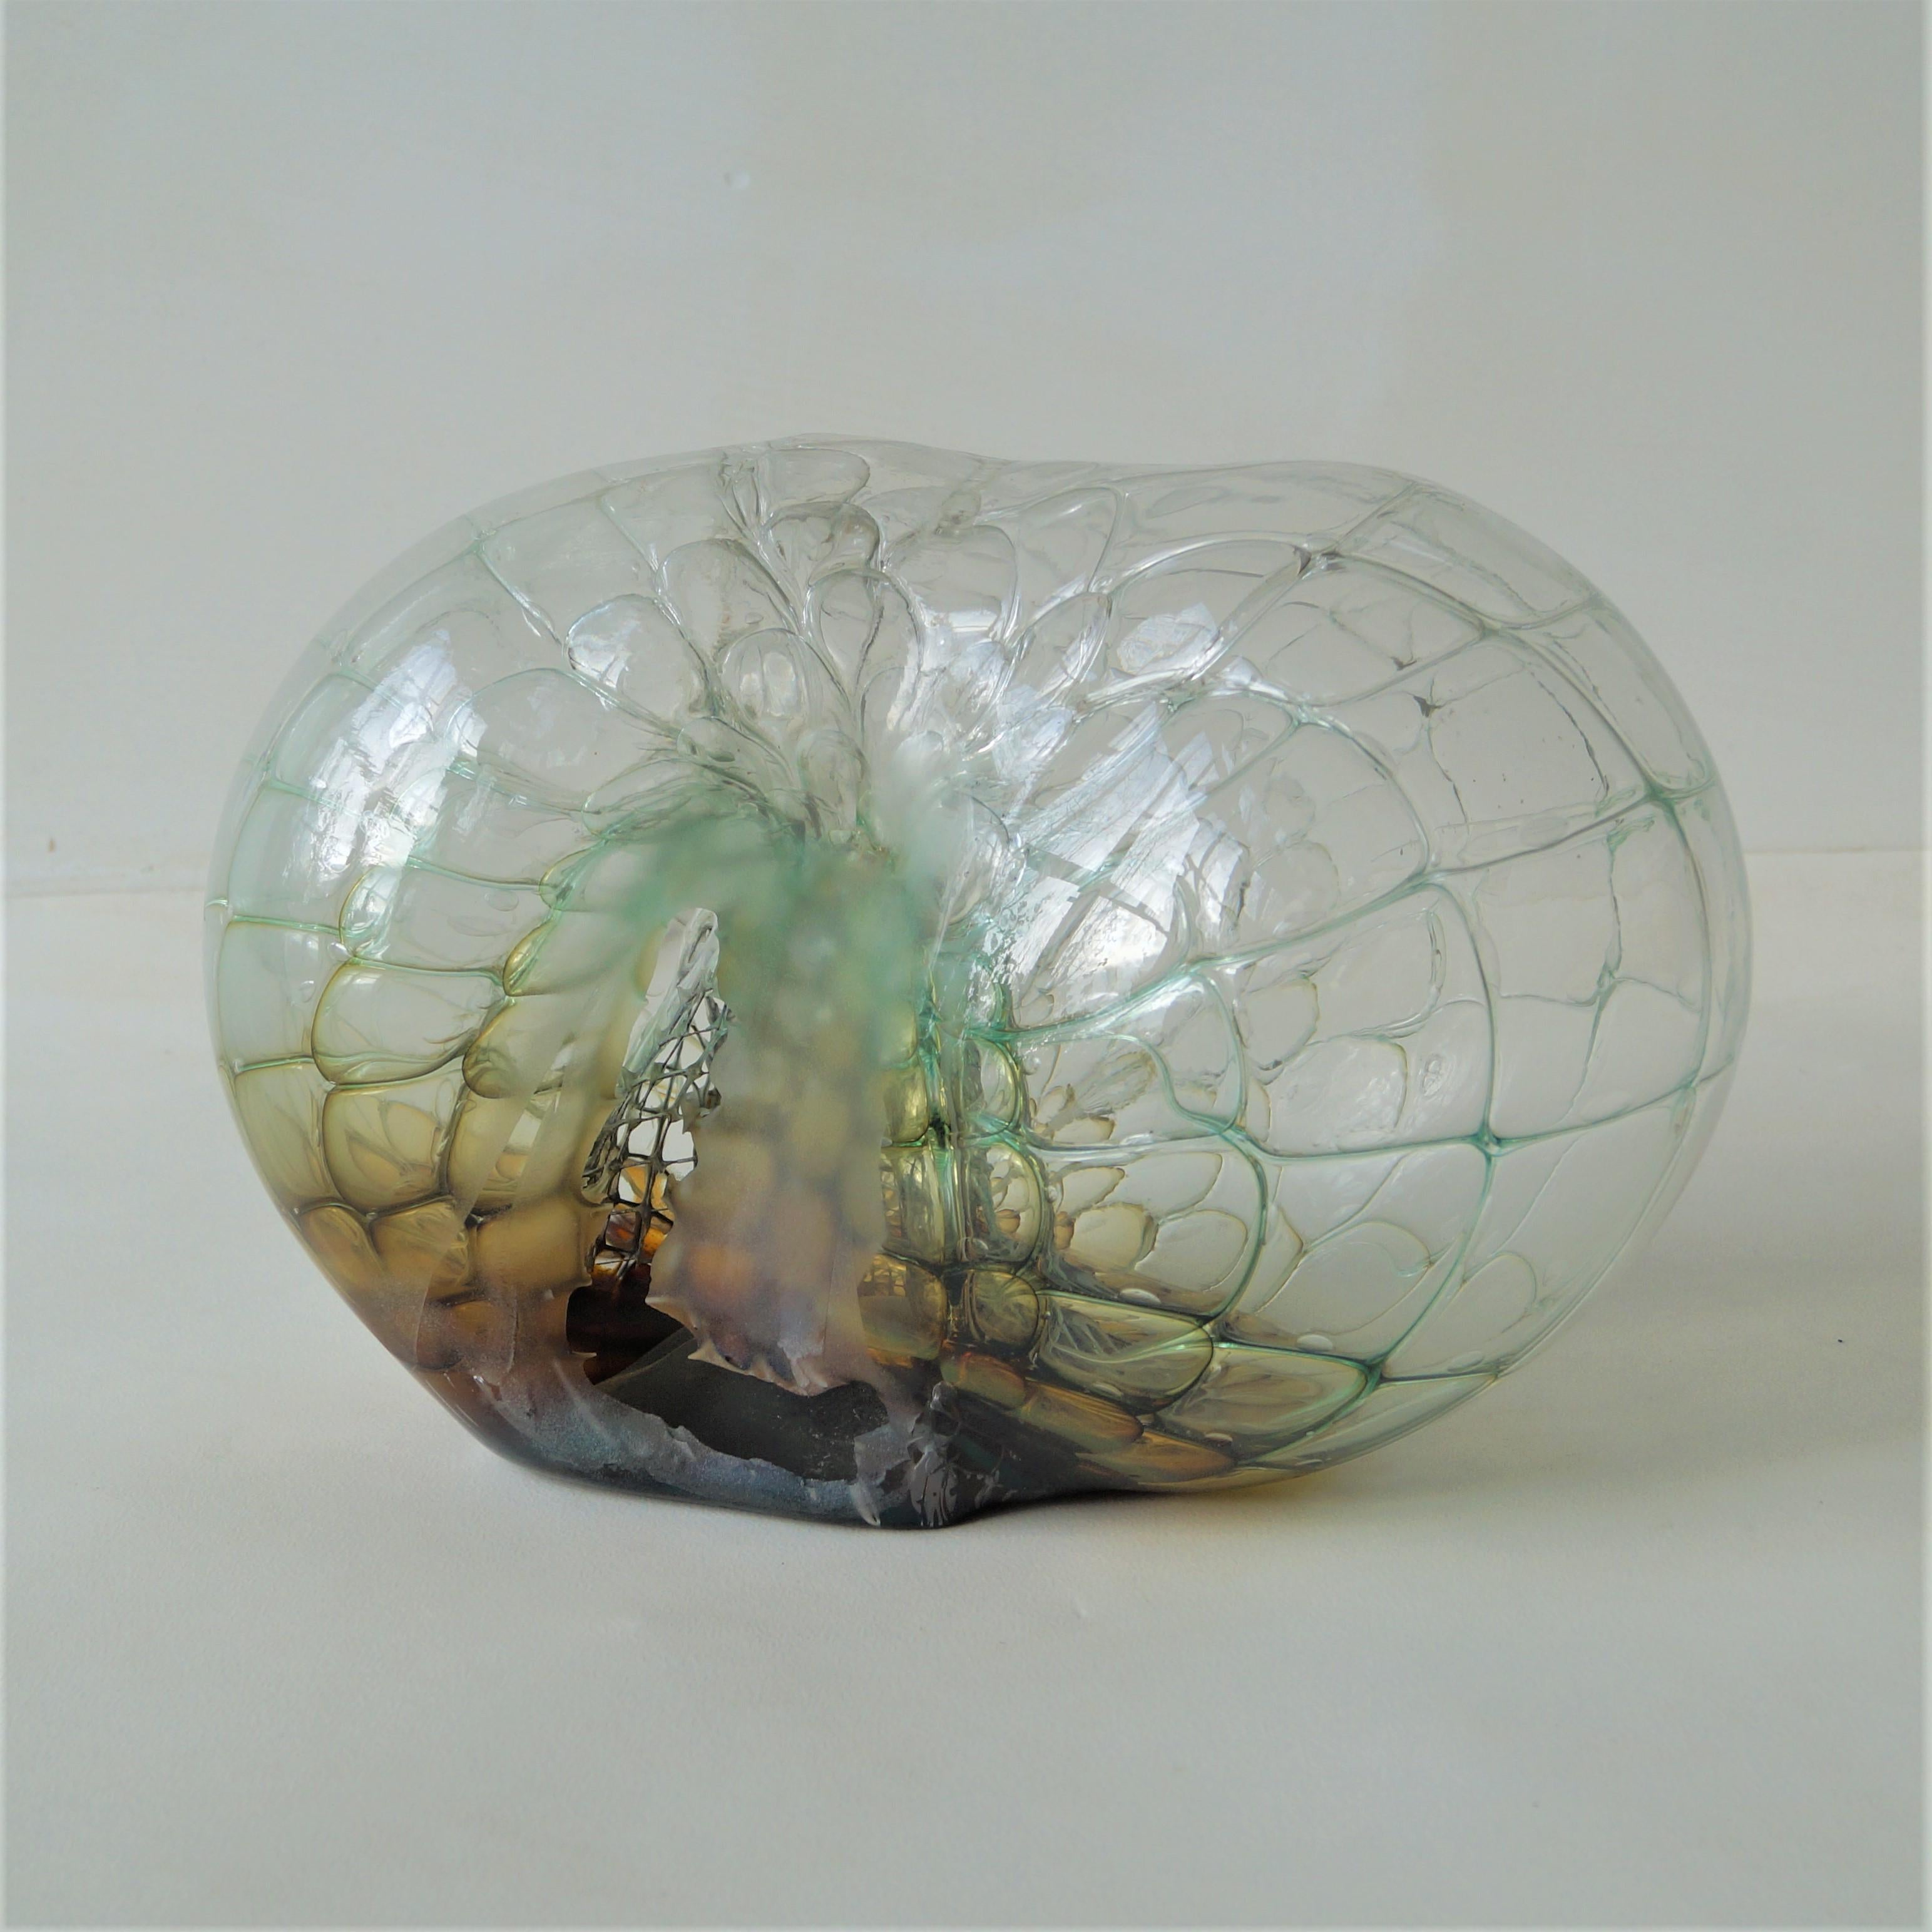 Une sculpture en verre transparent de taille impressionnante avec un cœur en verre vert/jaune/cognac, un revêtement en verre transparent et un treillis métallique (nid d'abeille) à l'intérieur. Le créateur est Jorg F. Zimmerman, estimé vers 2000.